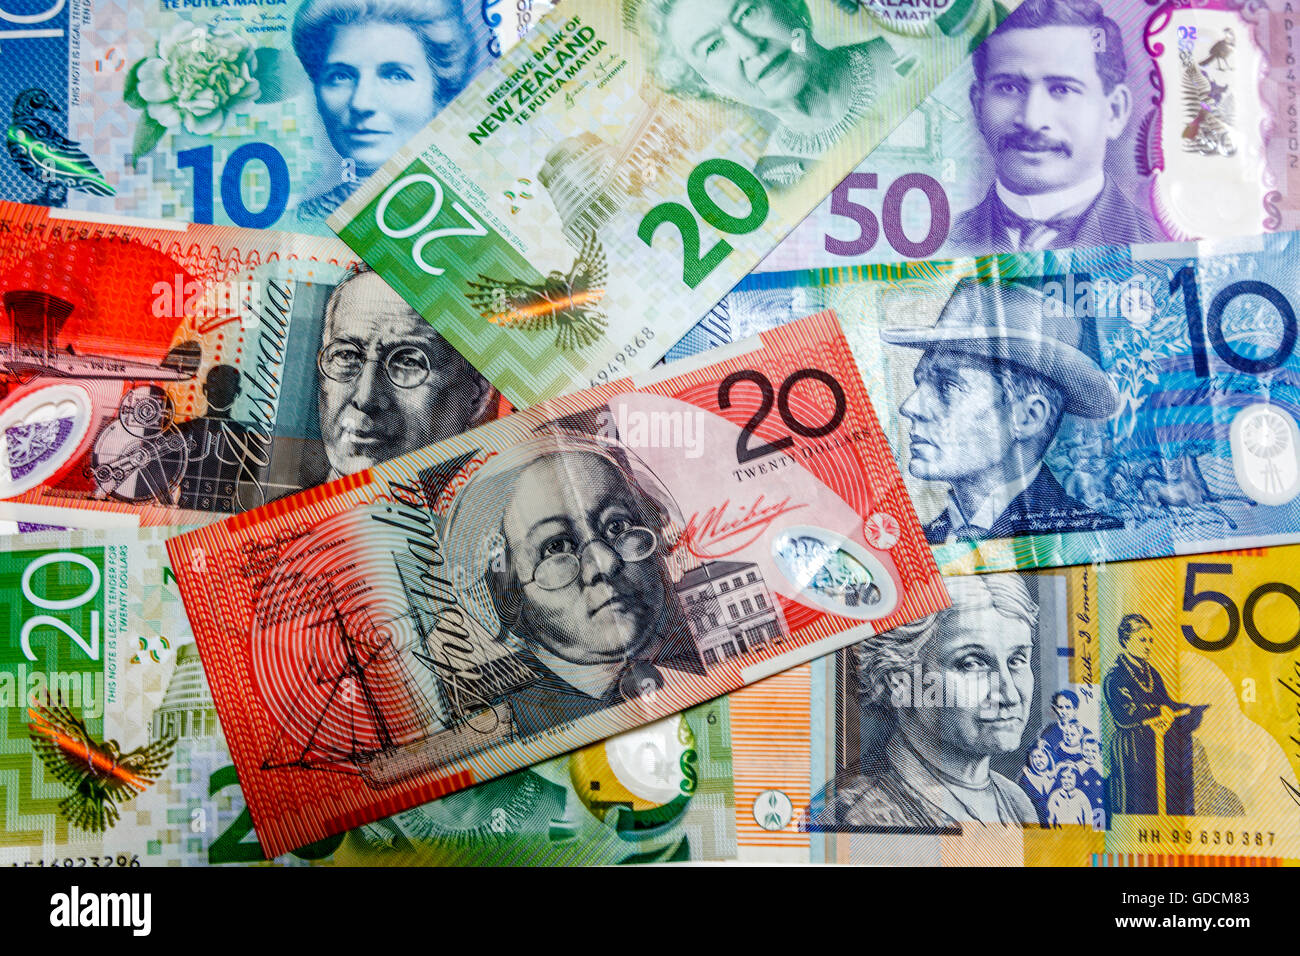 Neue zweite Generation Plastikpolymer New Zealand $50 $10 $20 Kiwi-Dollar-Banknoten und australische Banknoten Stockfoto